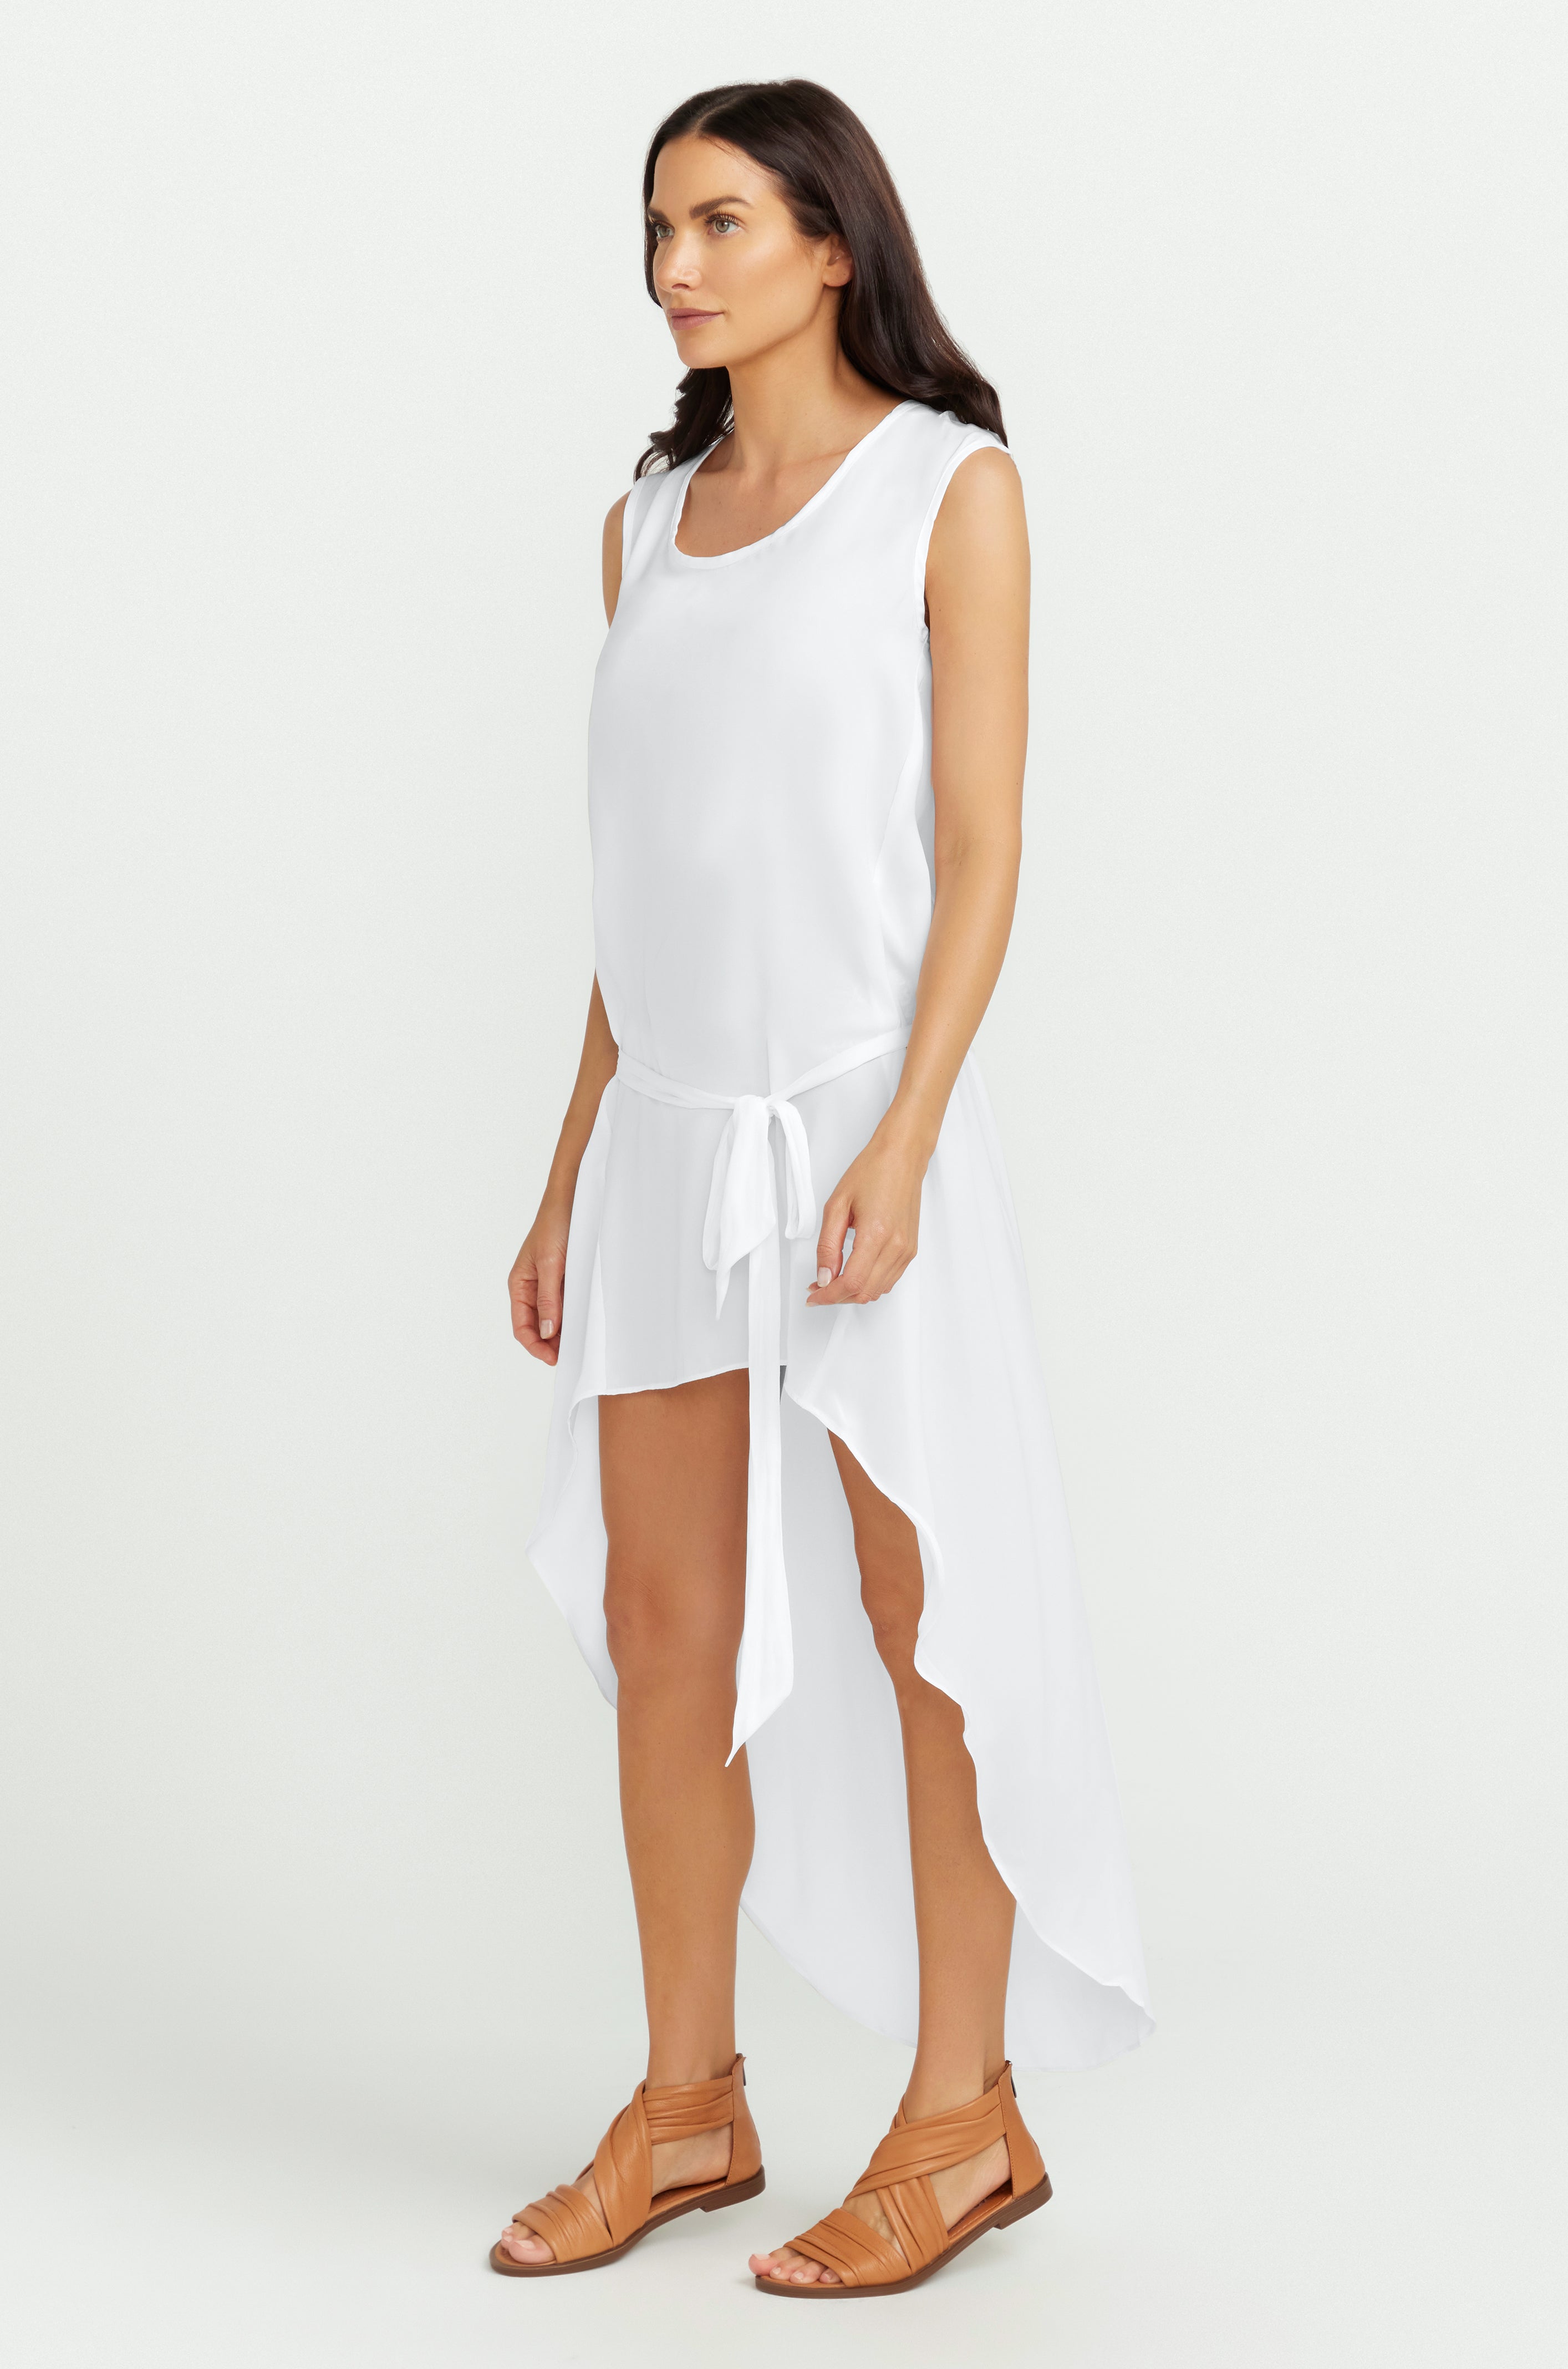 TUNIC DRESS / WHITE